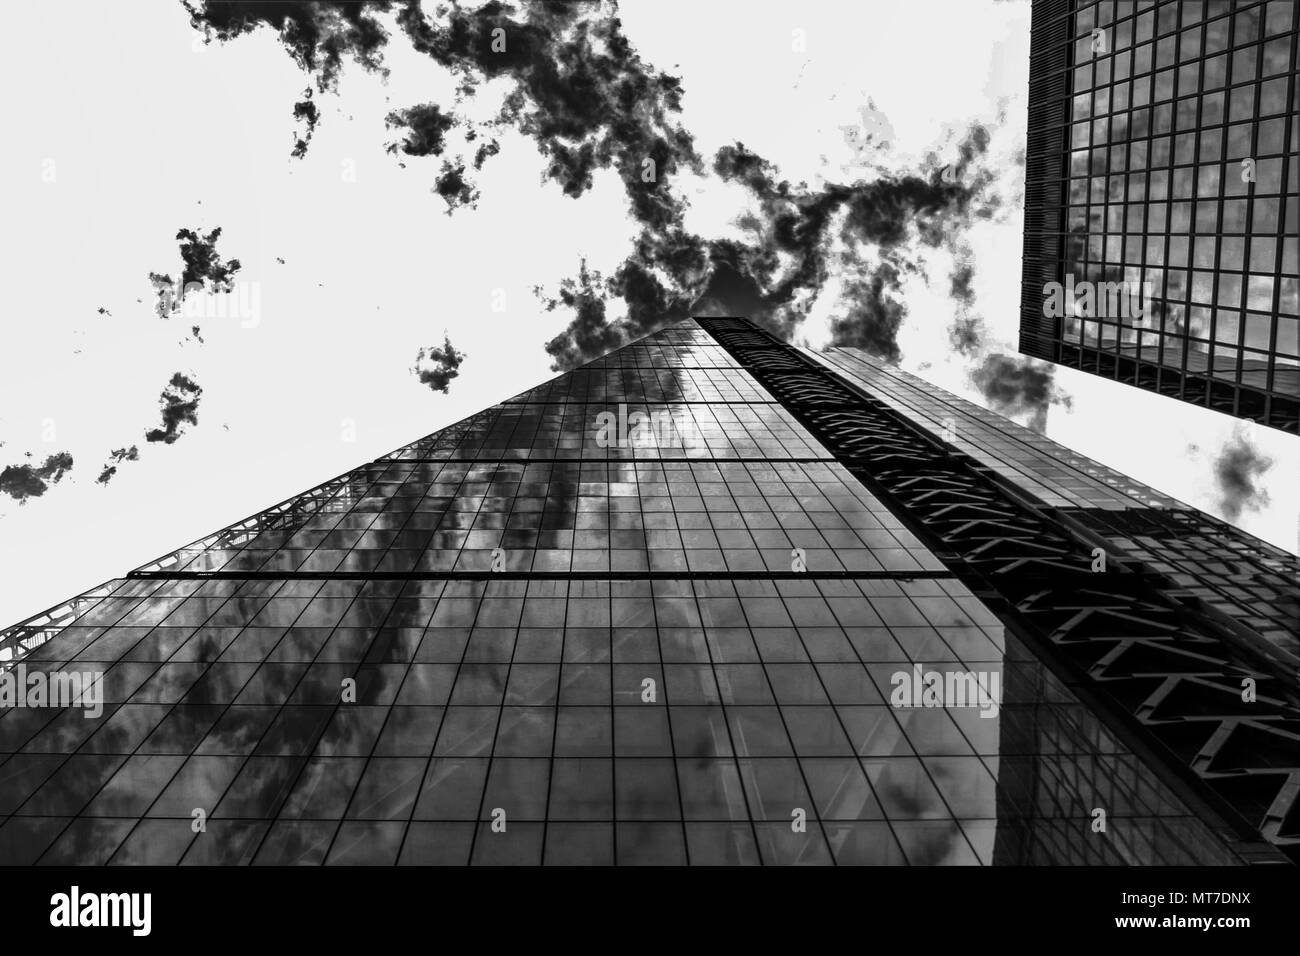 London city skyscraper glass facade, urban architecture. Stock Photo